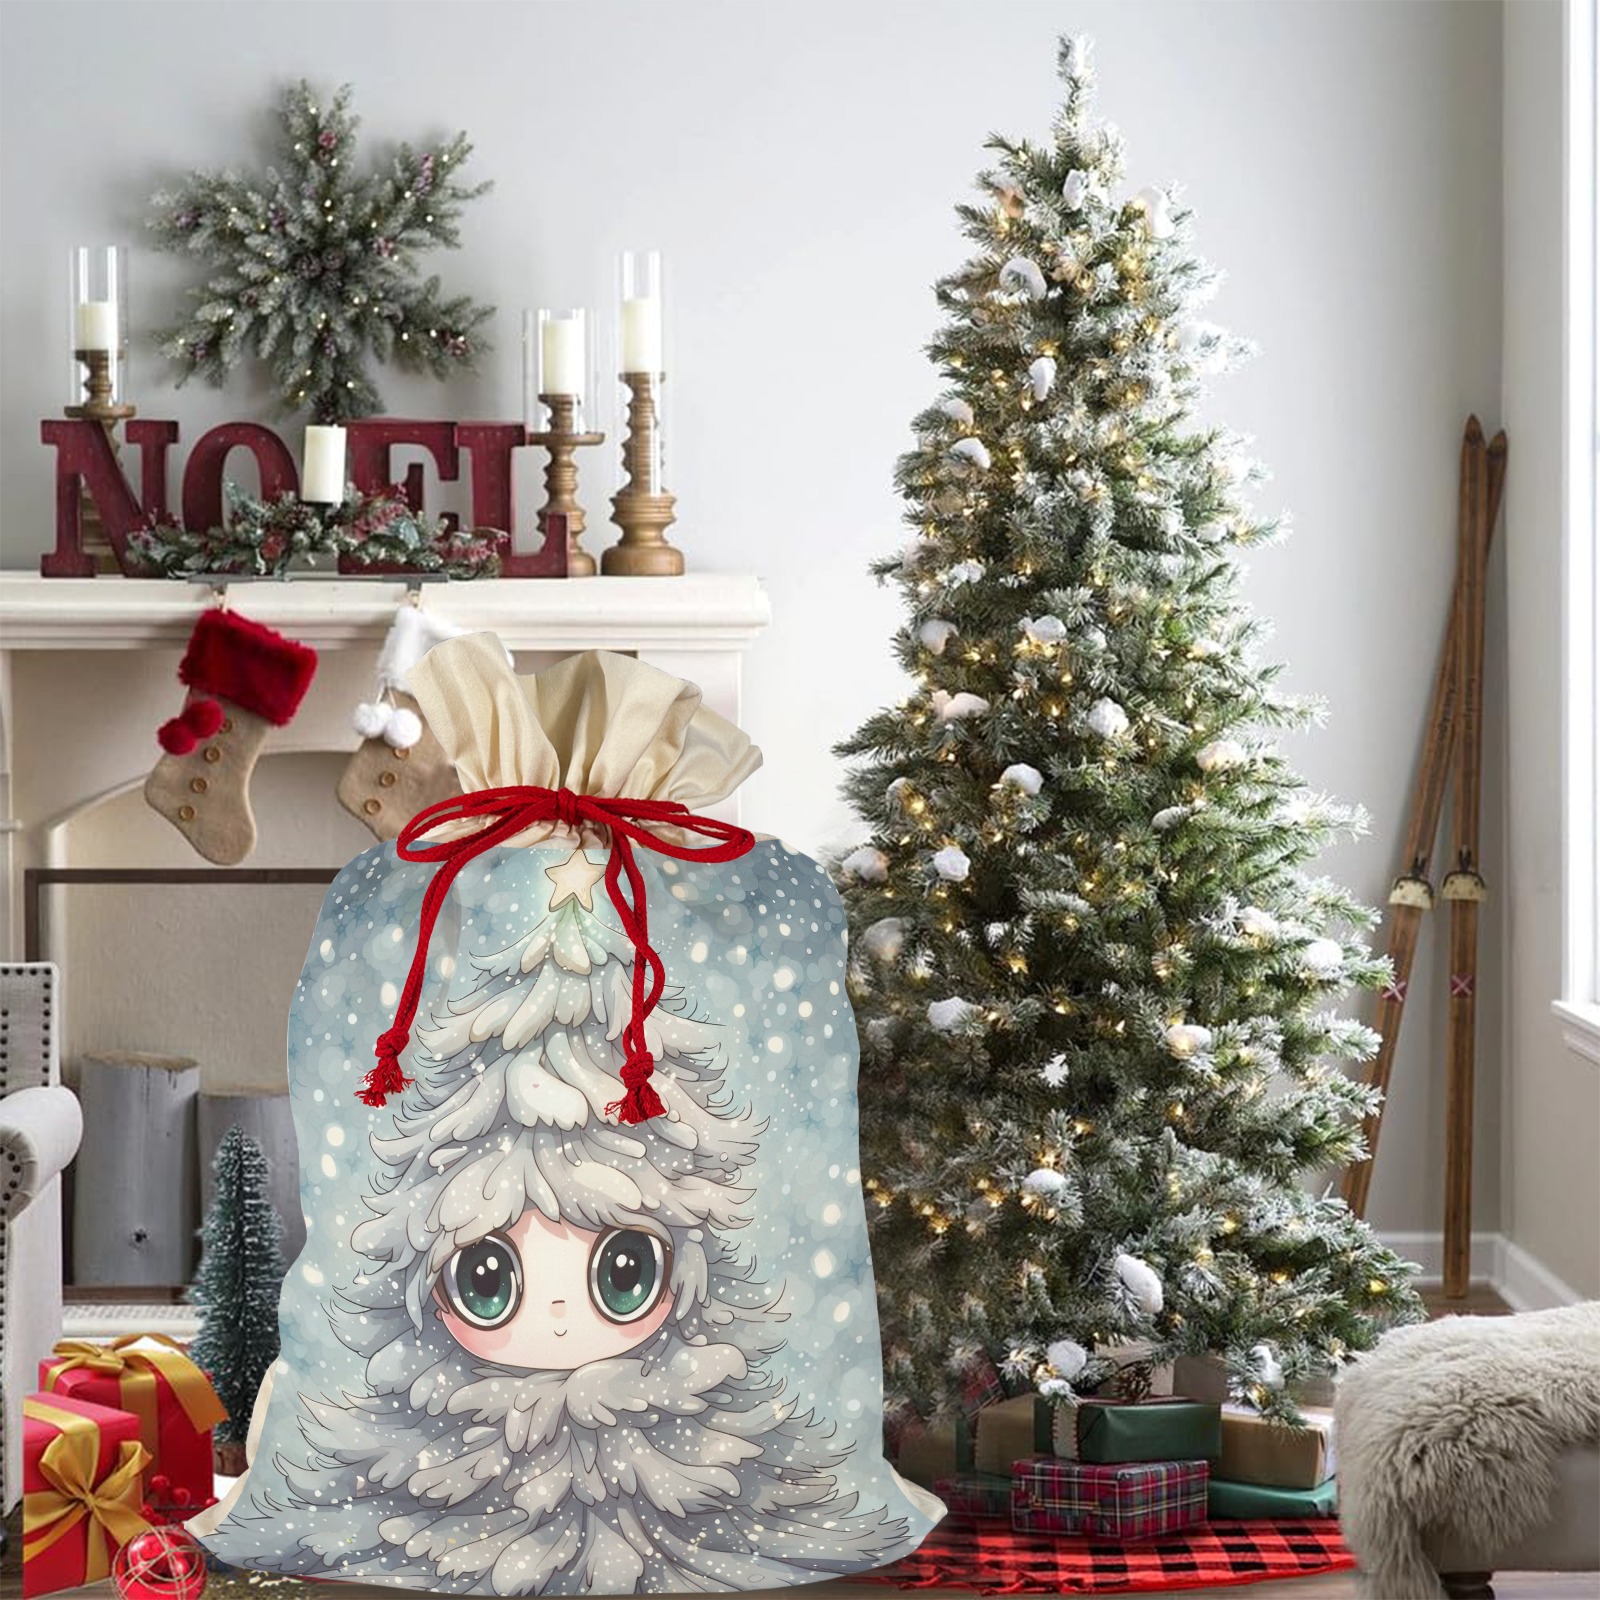 Little Christmas Tree Santa Claus Drawstring Bag 21"x32" (Two Sides Printing)